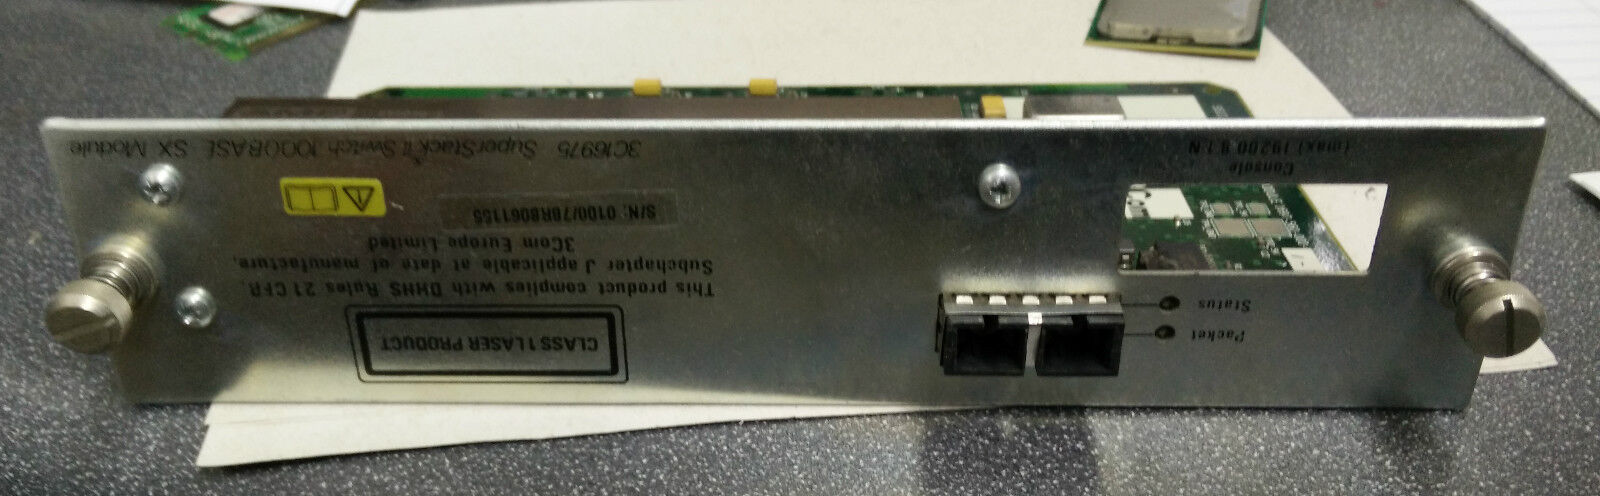 3Com 3C16975 SuperStack II Switch 3300 1-Port 1000Base-SX Module